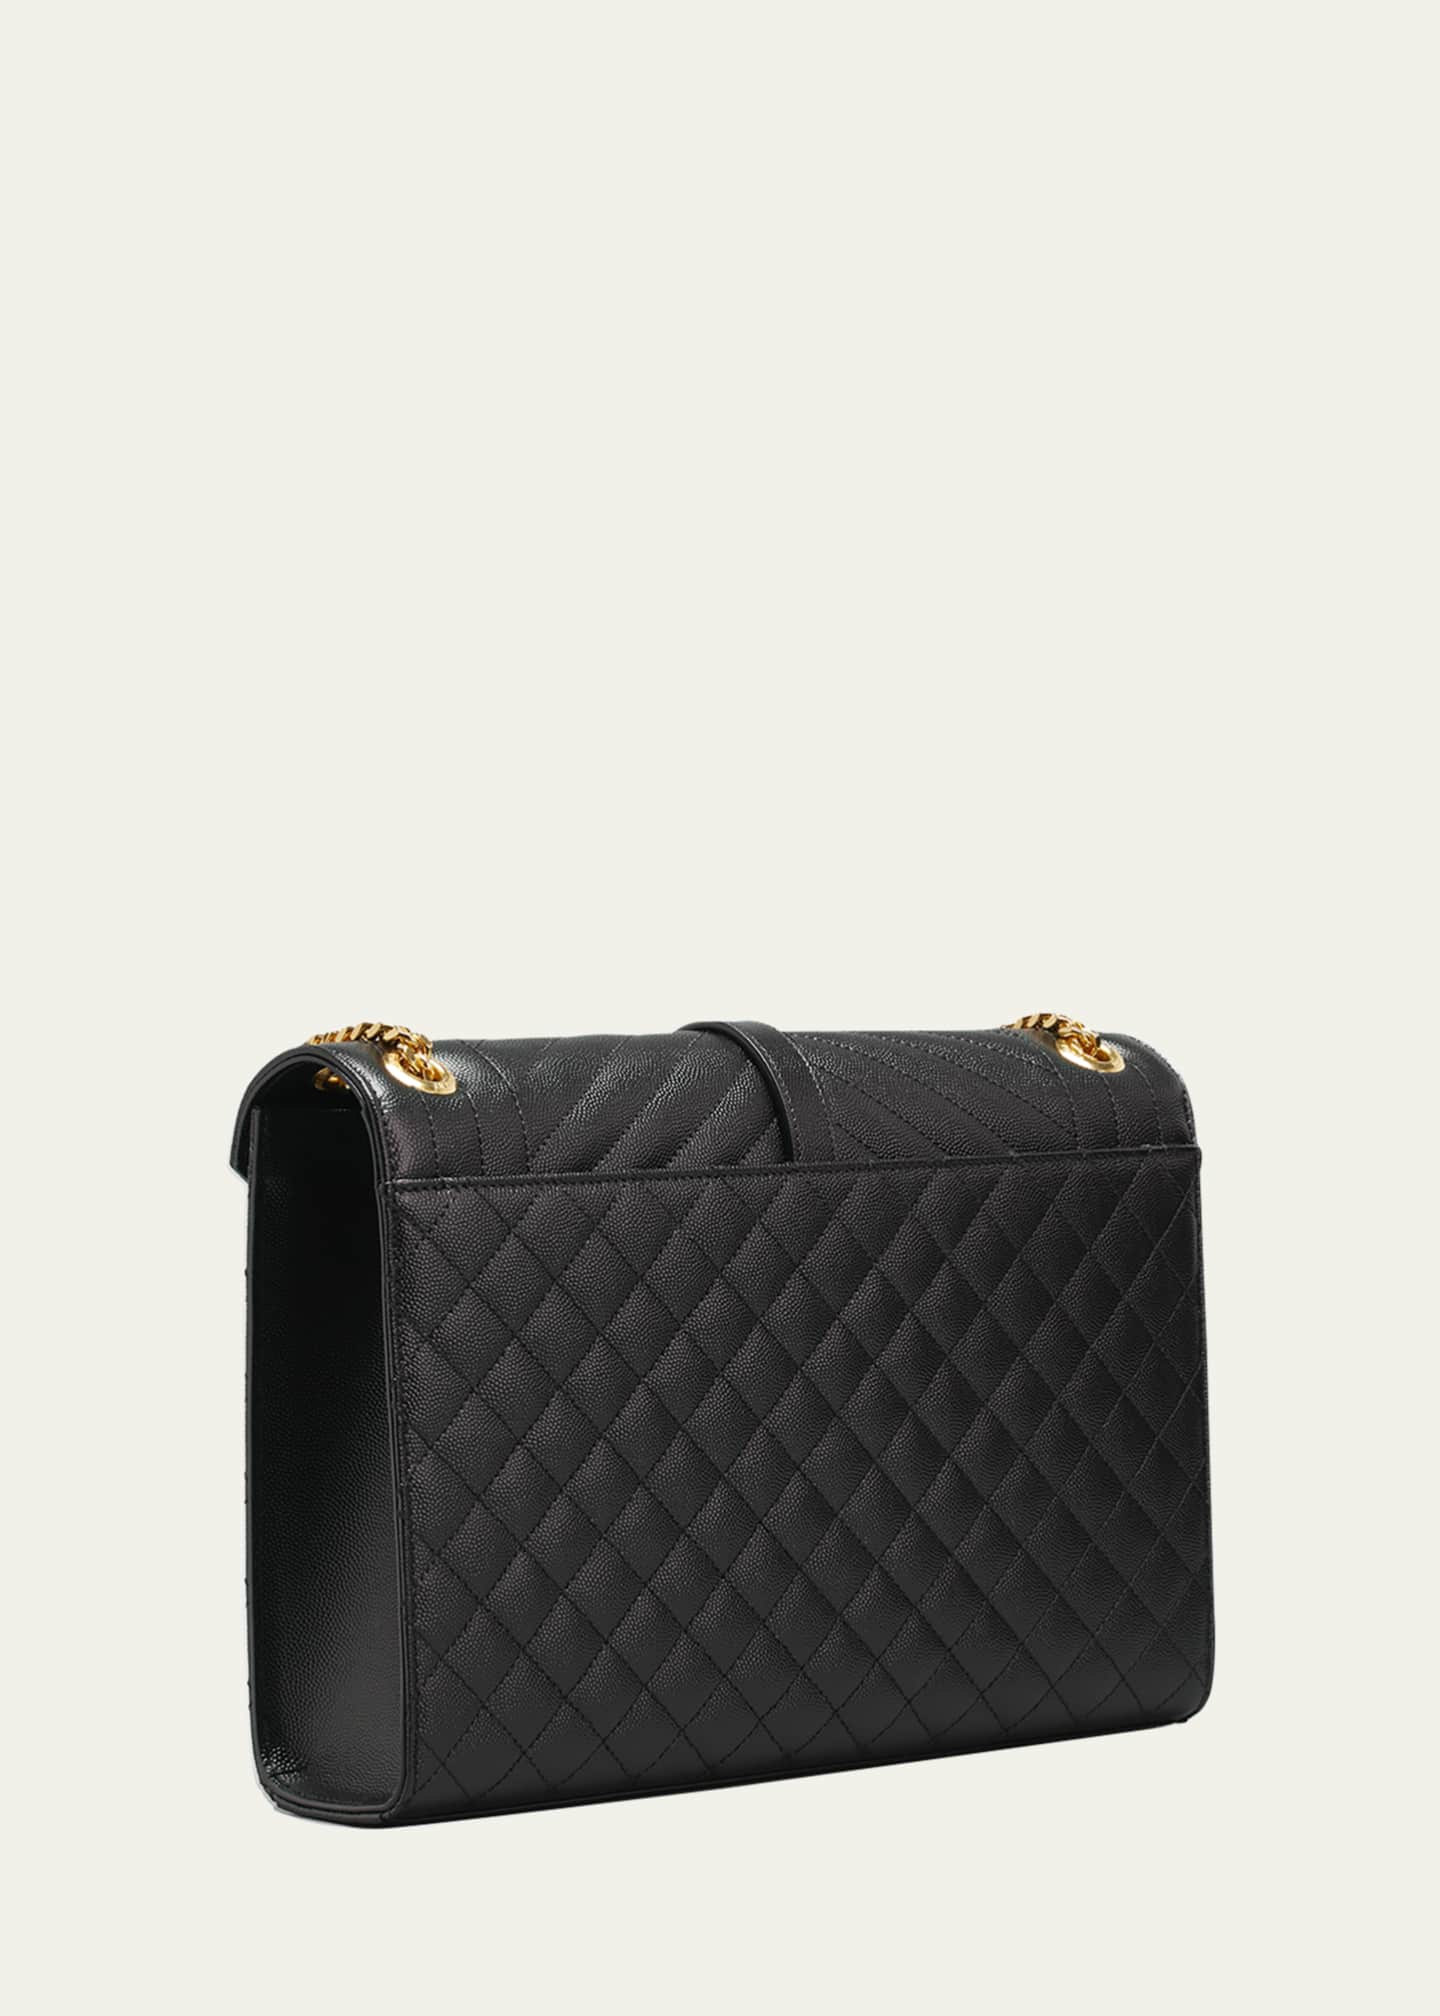 Saint Laurent Envelope Triquilt Large YSL Shoulder Bag in Grained Leather Image 3 of 5